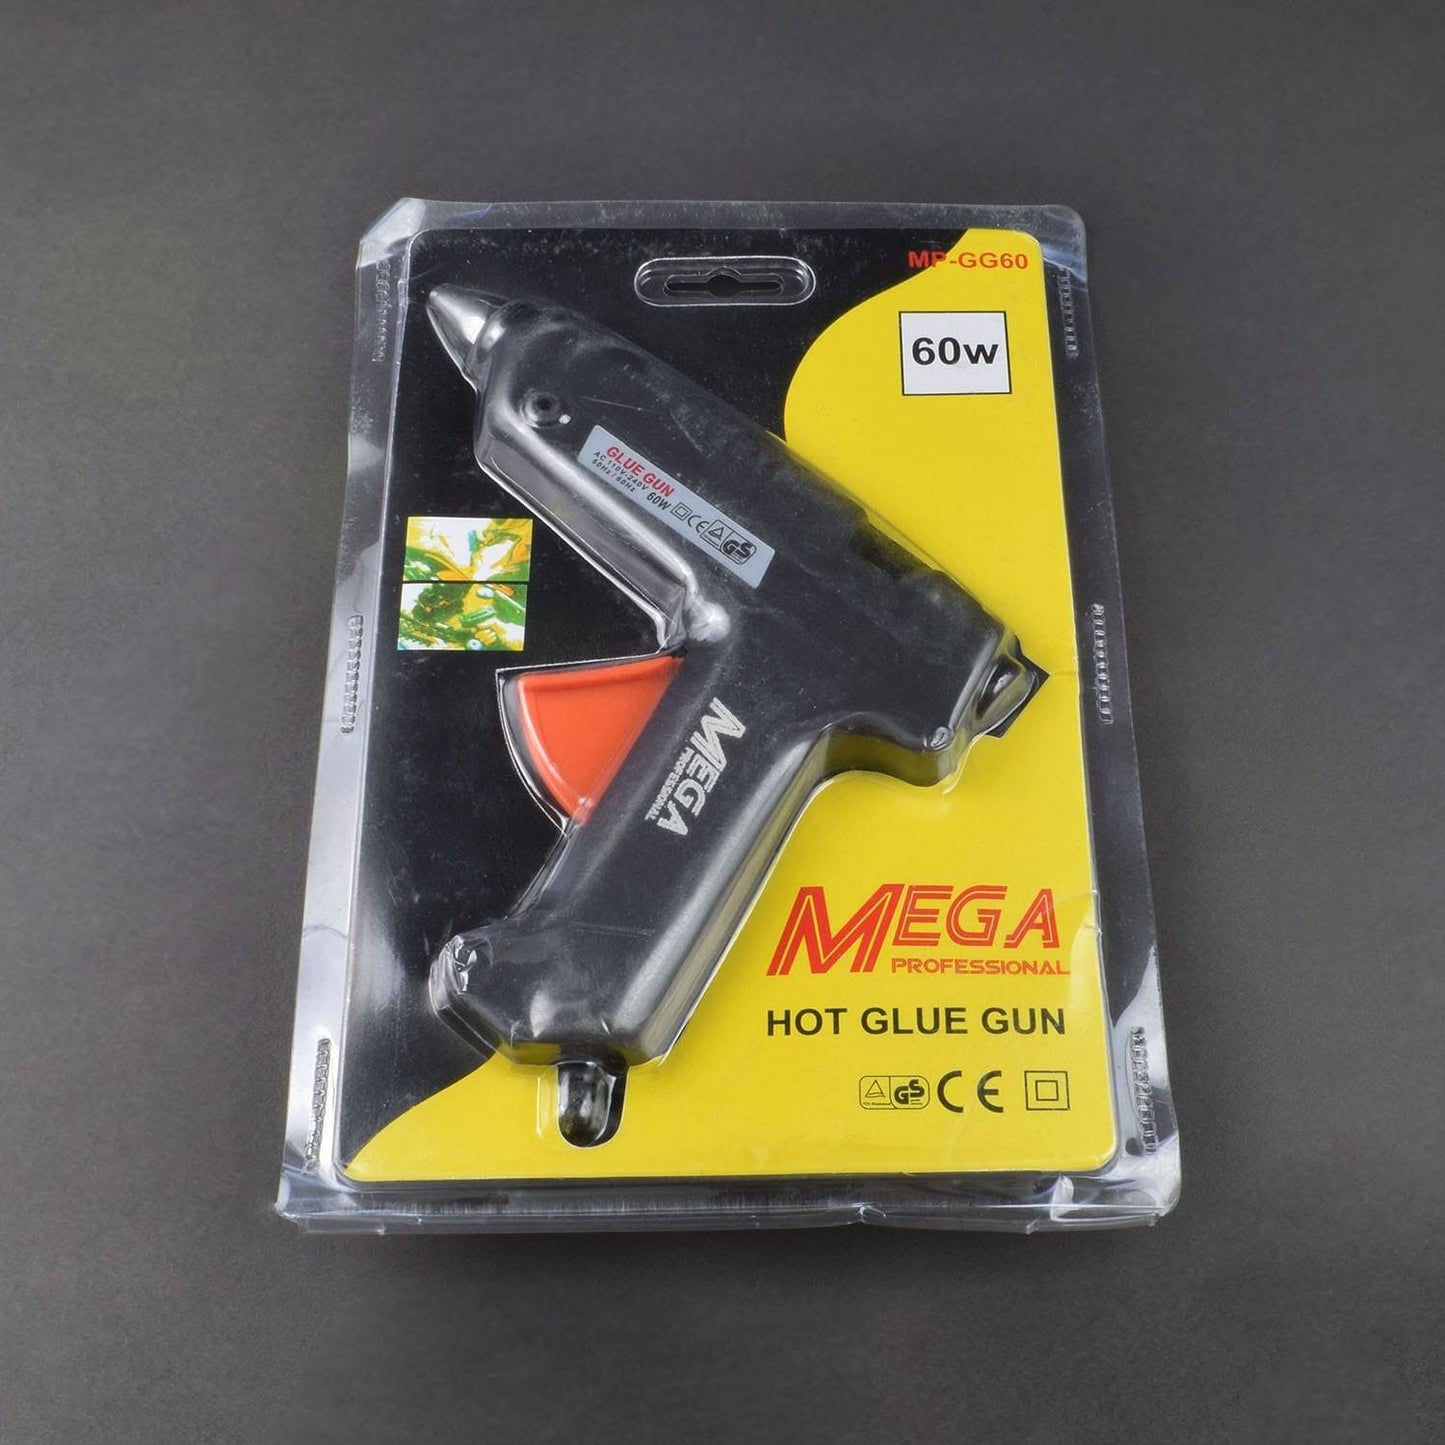 60 Watt Professional Hot Glue Gun -ER044 - REES52